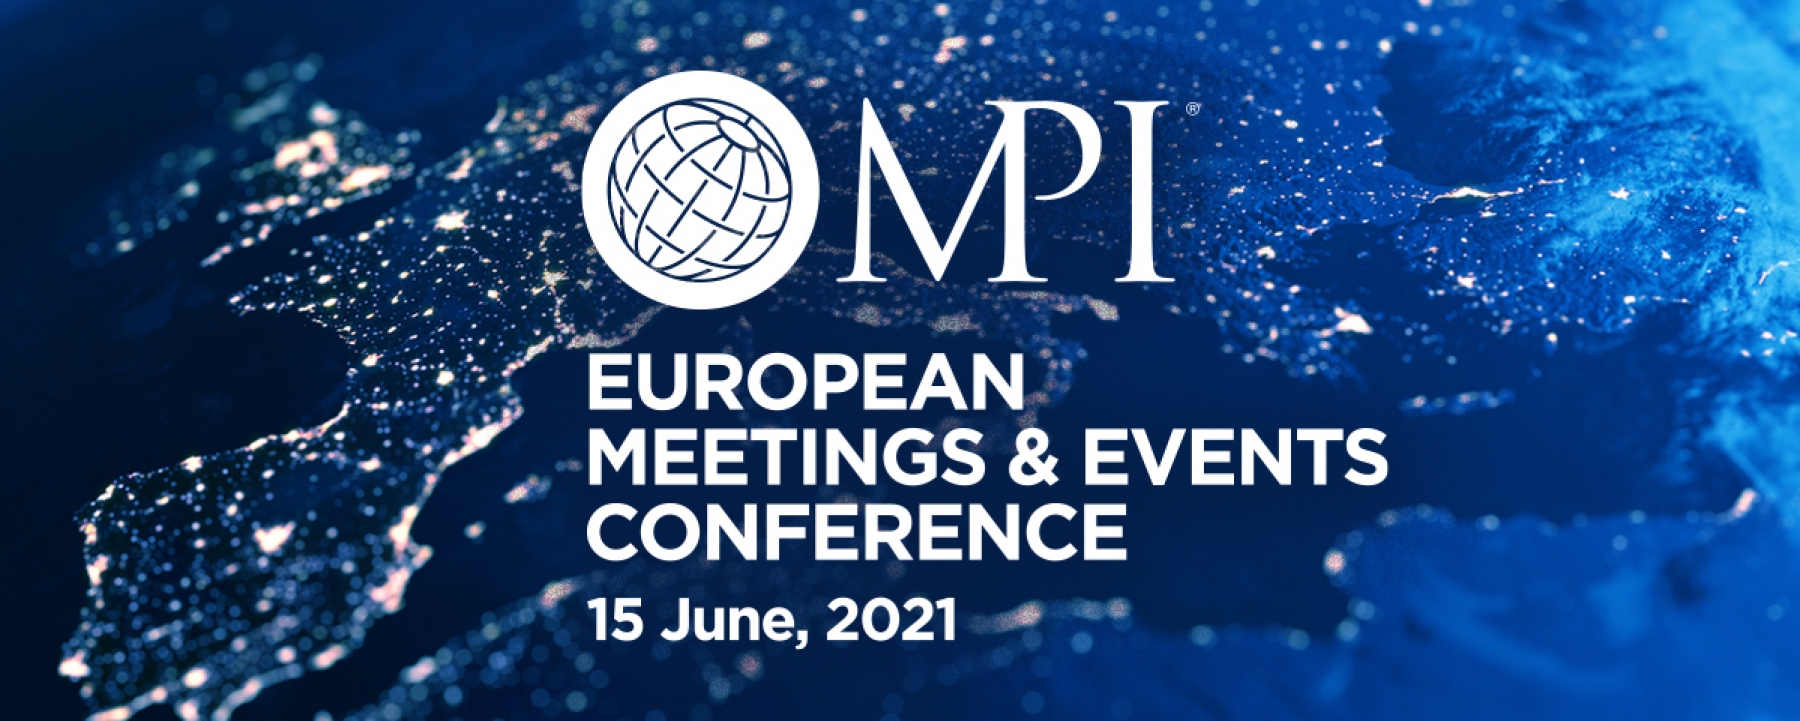 European Meetings & Events Conference, le 15 juin par MPI France Suisse